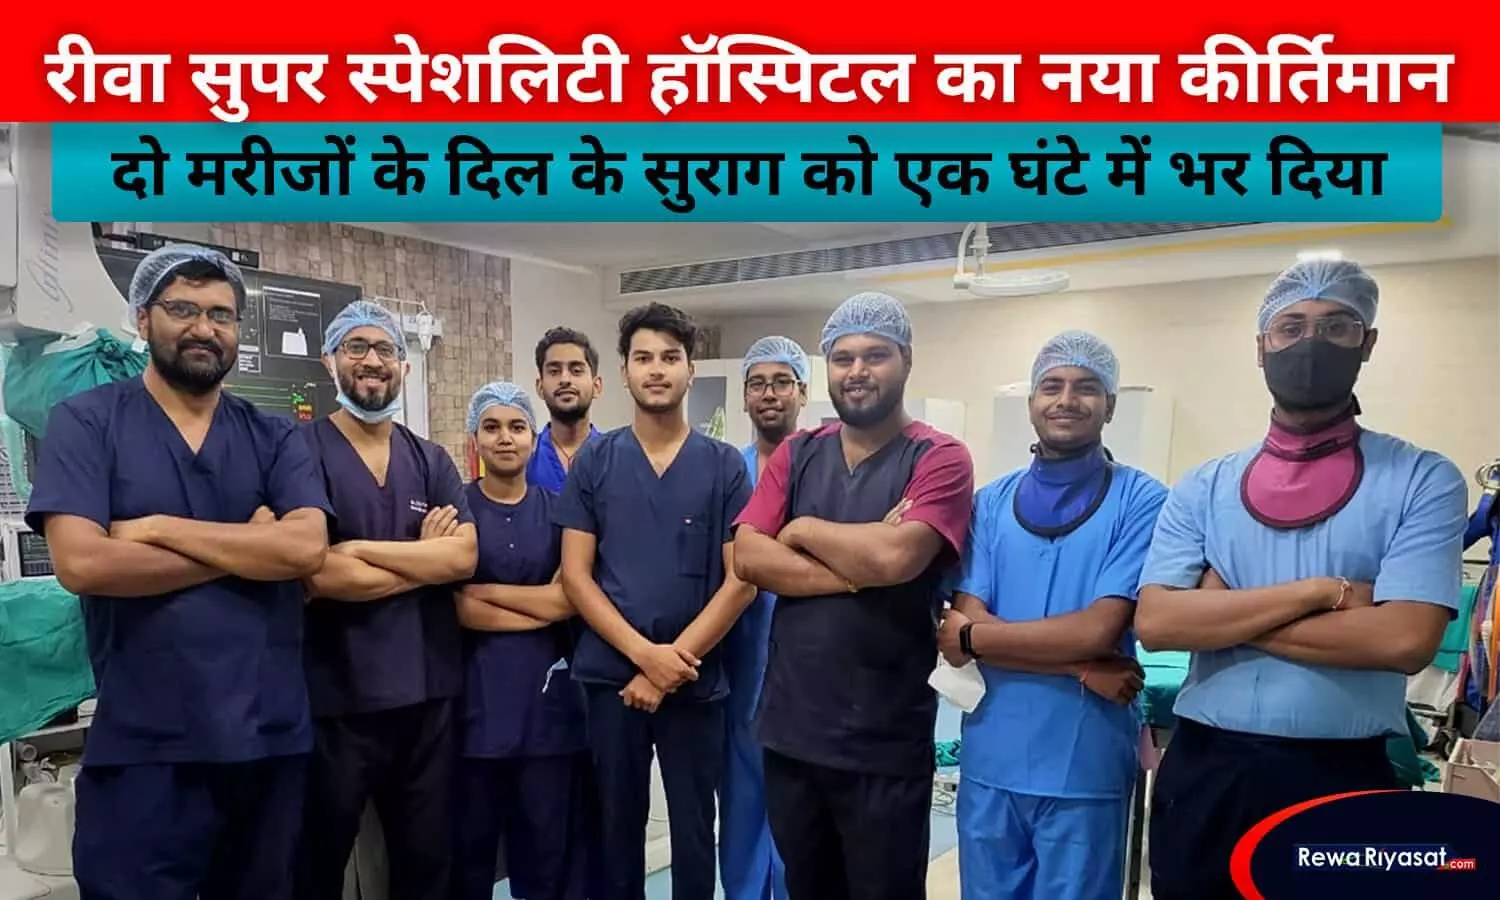 सुपर स्पेशलिटी हॉस्पिटल रीवा के डॉक्टर्स का नया कीर्तिमान, दो मरीजों के दिल के सुराग को एक घंटे में भर दिया